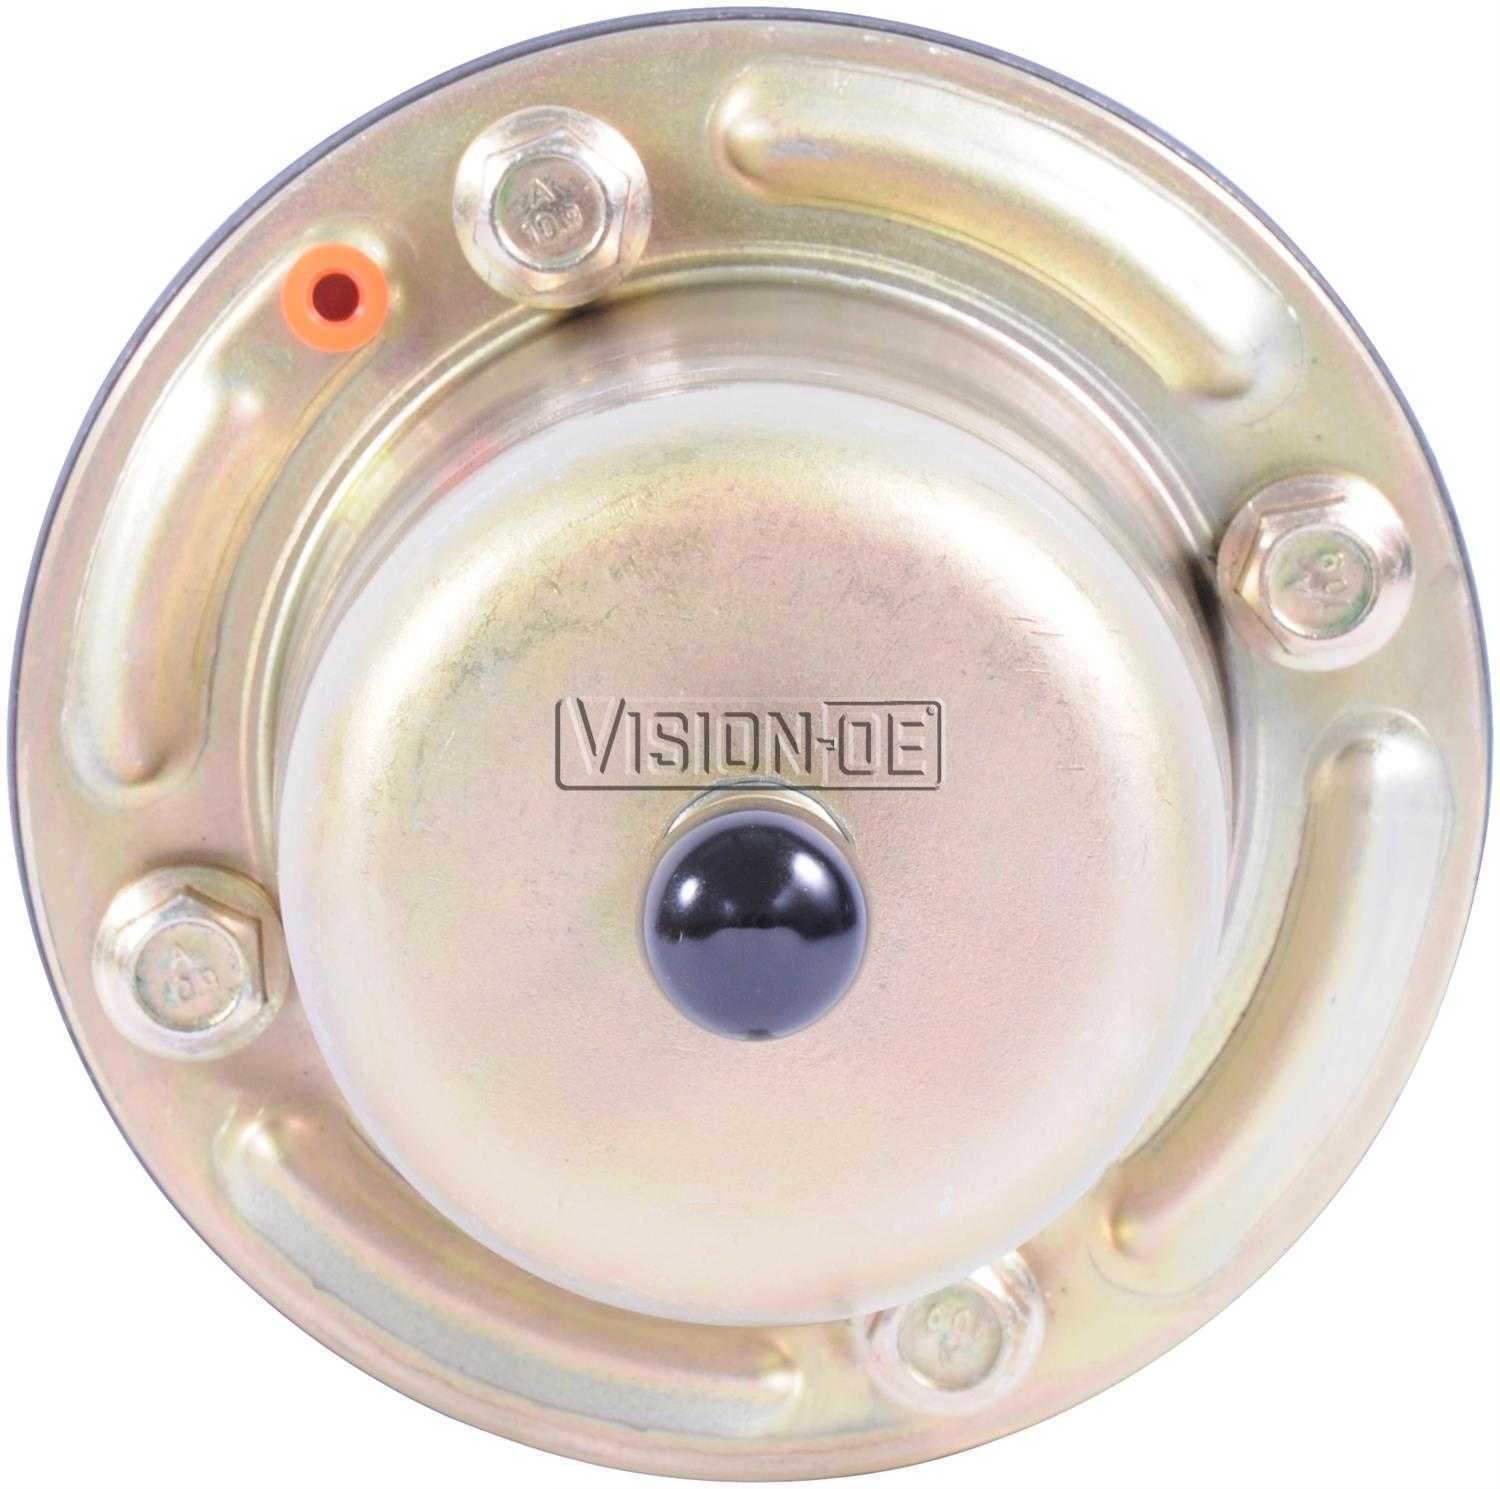 VISION-OE - New Power Steering Pump - VOE N713-0101